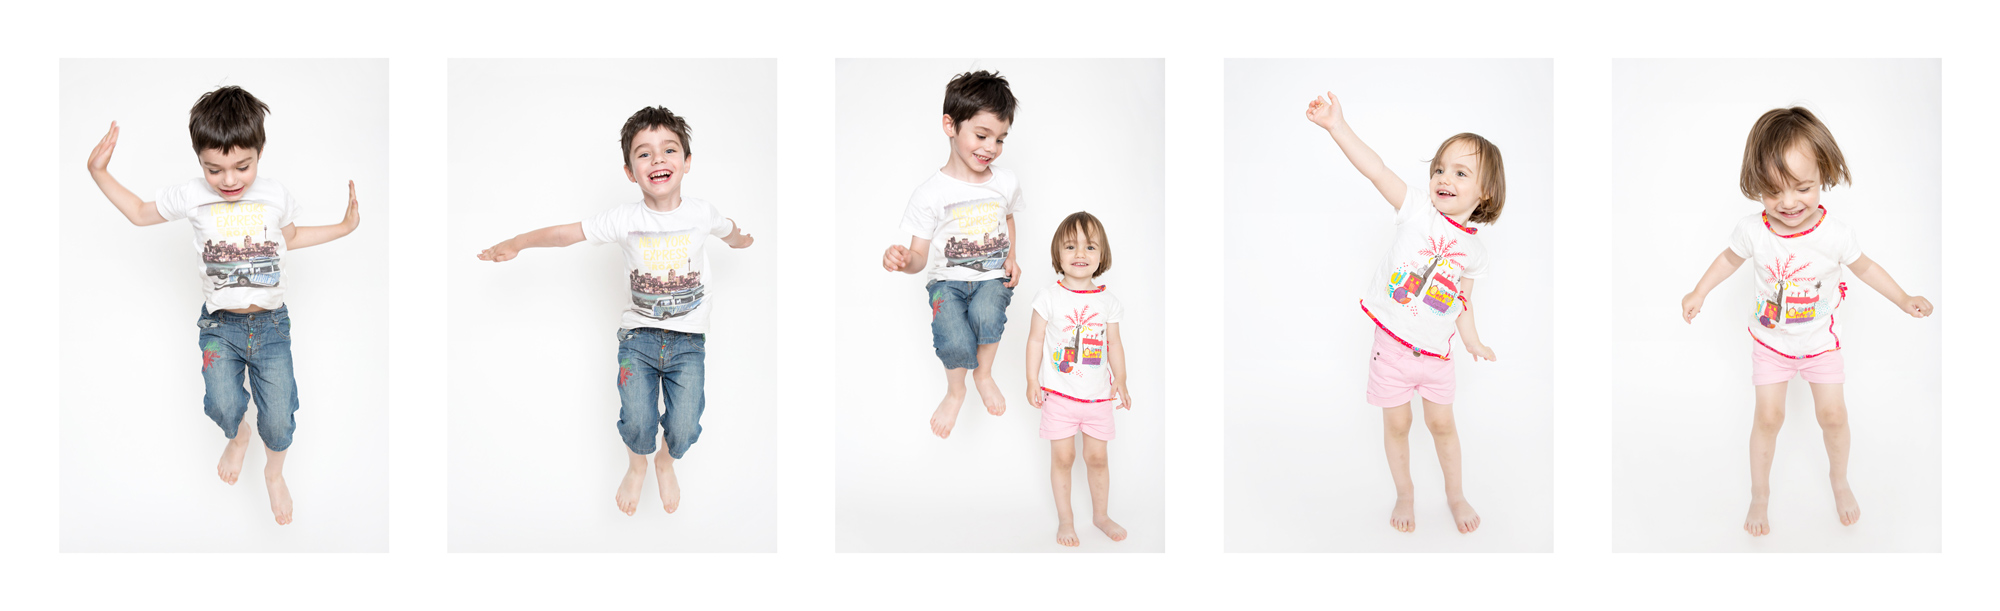 Montage photo d'une séance en studio photo d'enfants sautant 